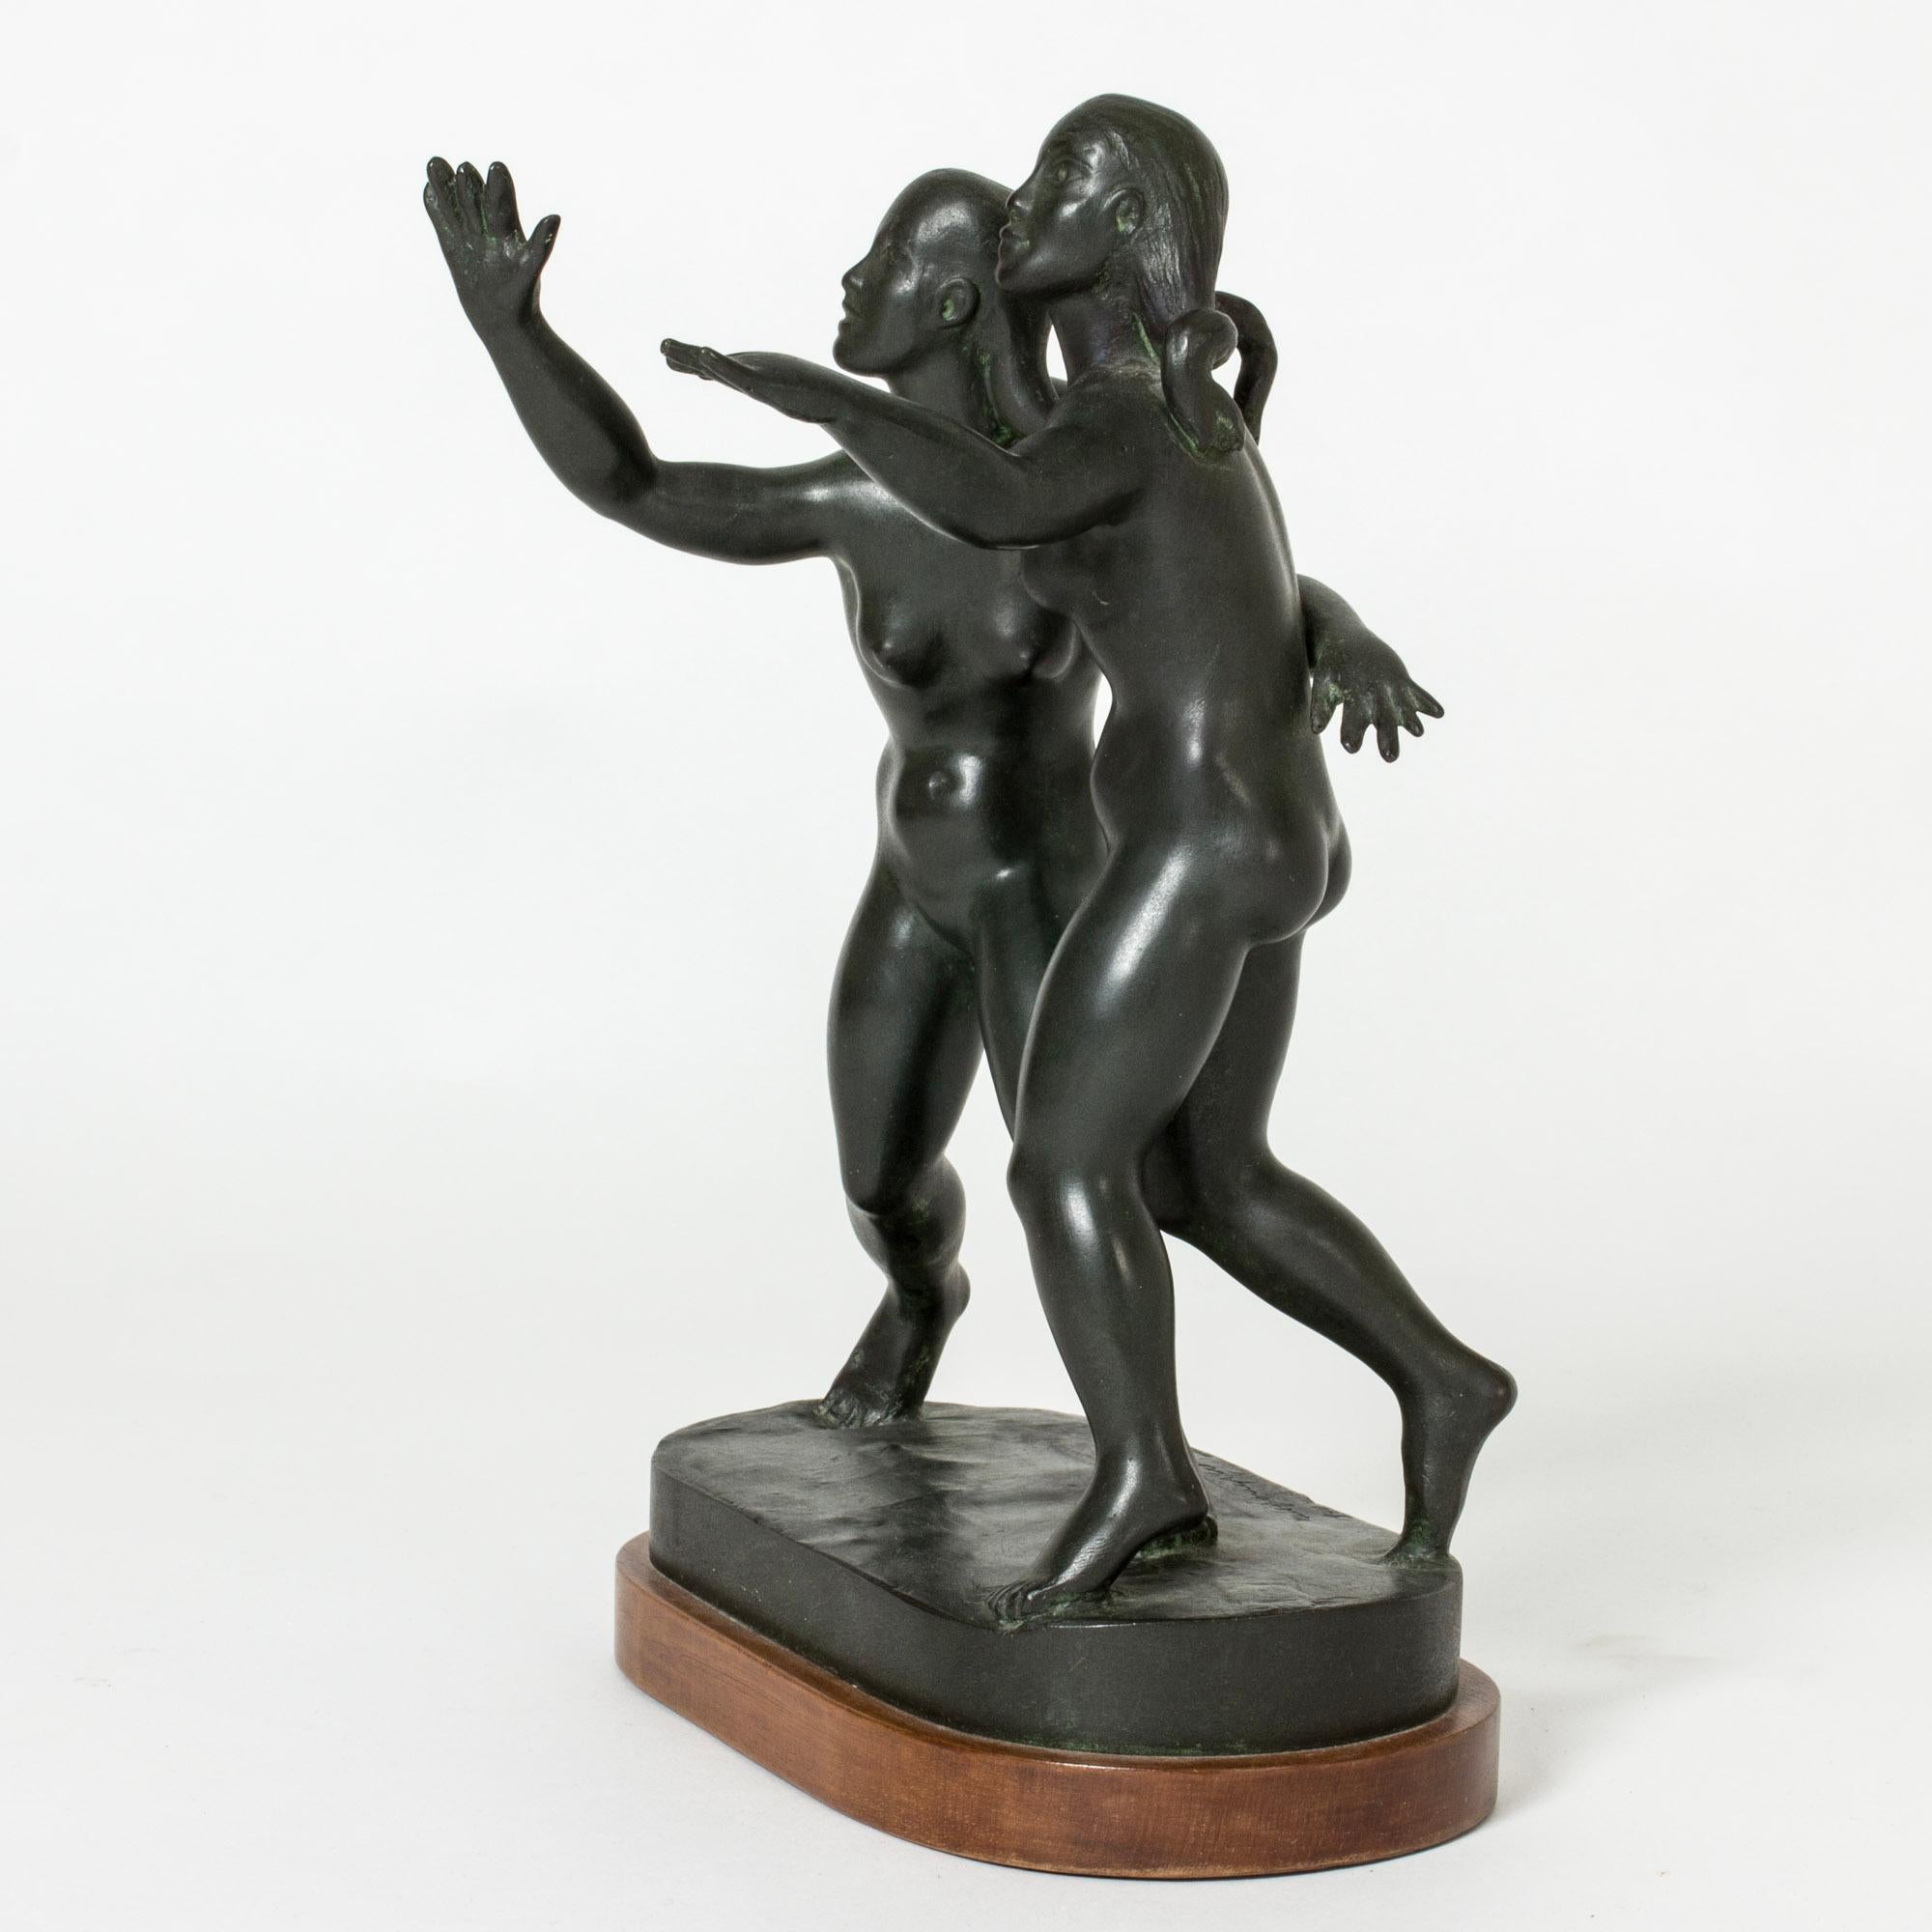 Schöne Bronzefigur von Nils Fougstedt in Form von zwei jungen Frauen. Die Frauen strecken ihre Arme aus und haben ihre Gesichter nach oben gerichtet. Viel Liebe zum Detail, lebhafter Ausdruck.